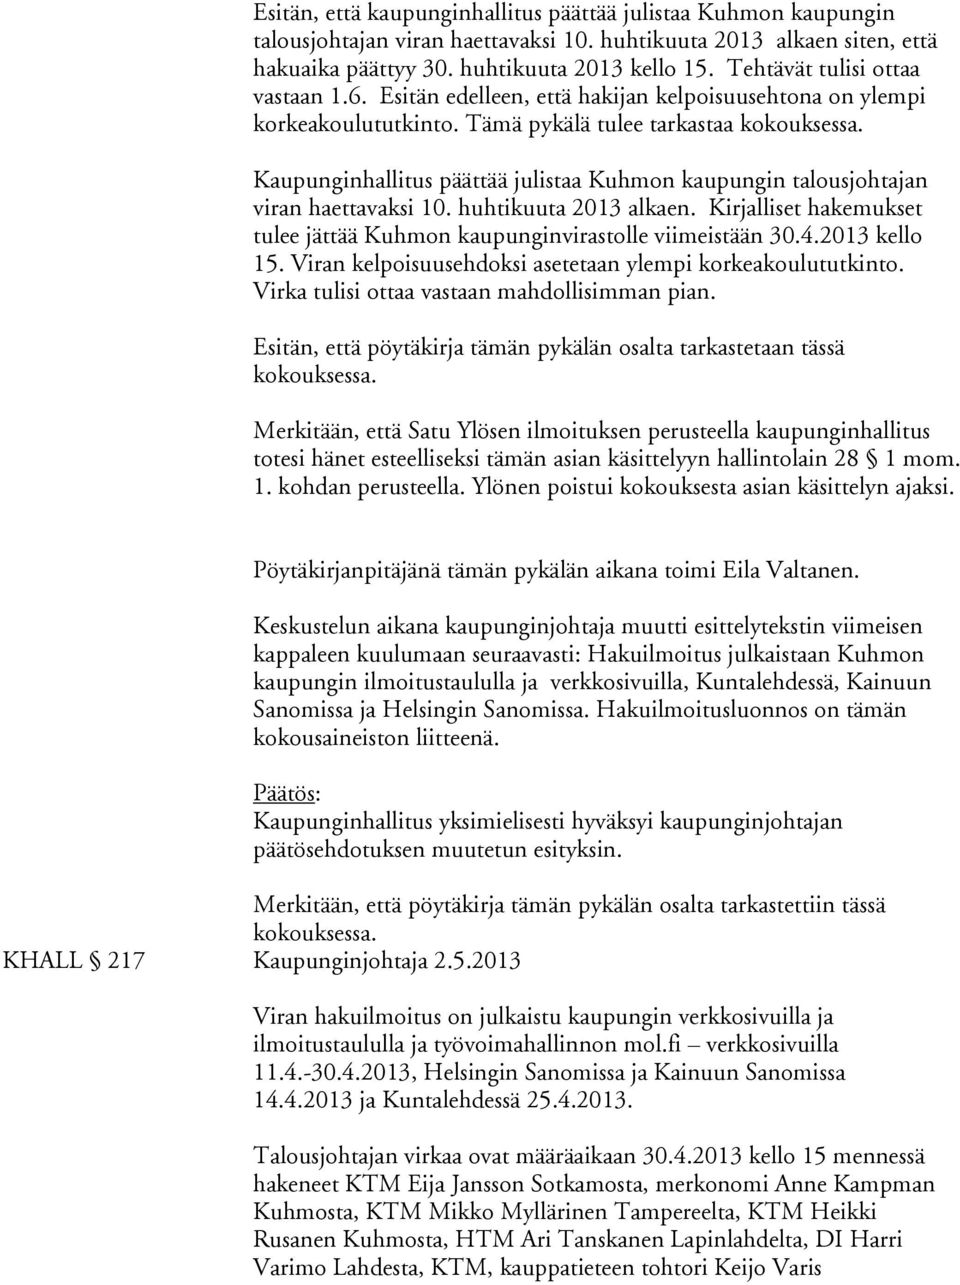 Kaupunginhallitus päättää julistaa Kuhmon kaupungin talousjohtajan viran haettavaksi 10. huhtikuuta 2013 alkaen. Kirjalliset hakemukset tulee jättää Kuhmon kaupunginvirastolle viimeistään 30.4.